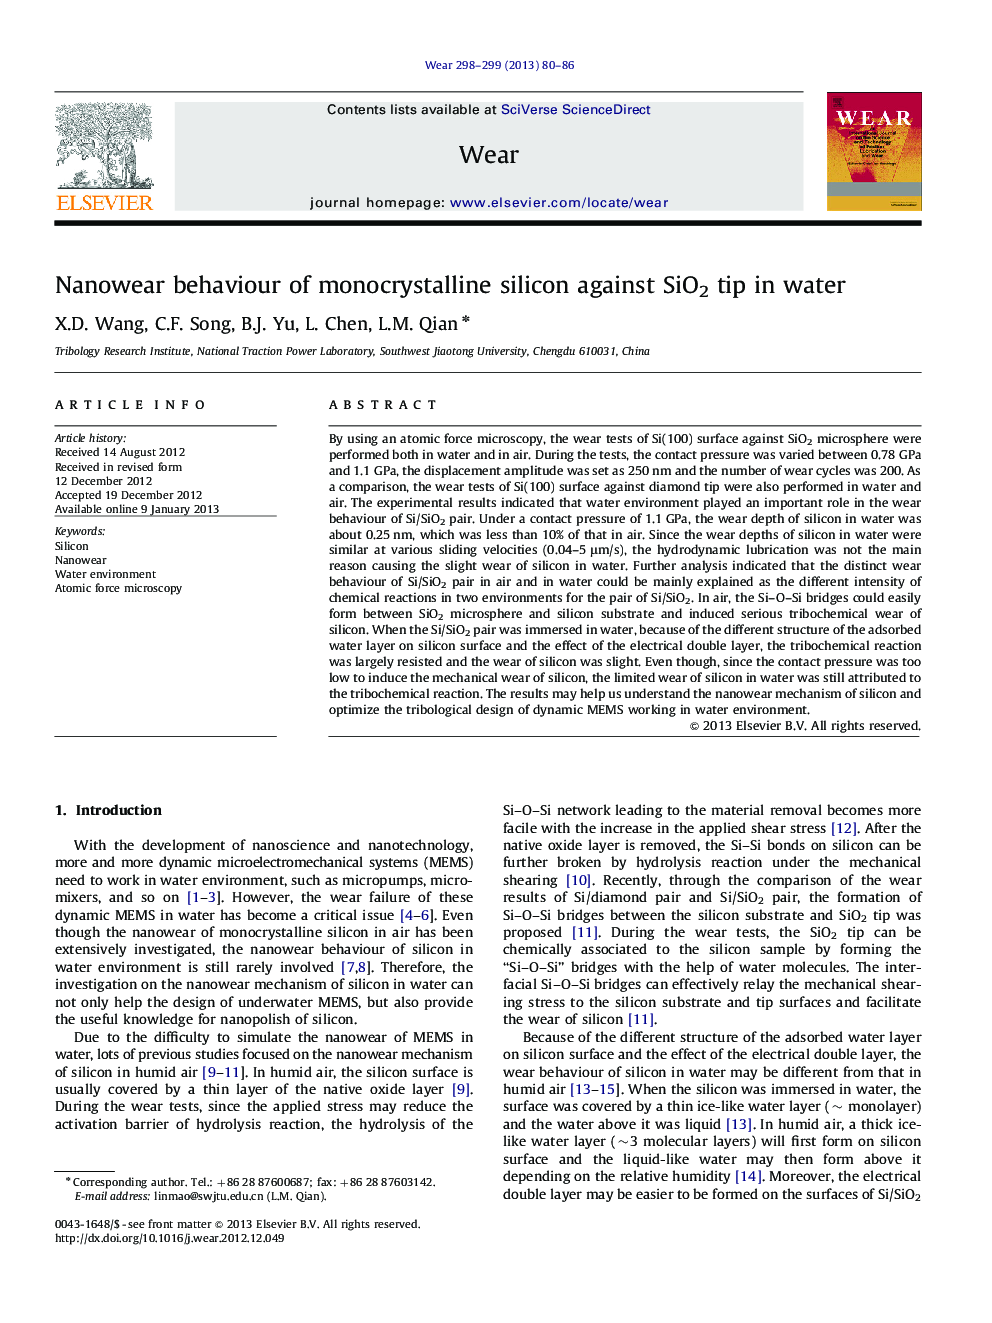 Nanowear behaviour of monocrystalline silicon against SiO2 tip in water